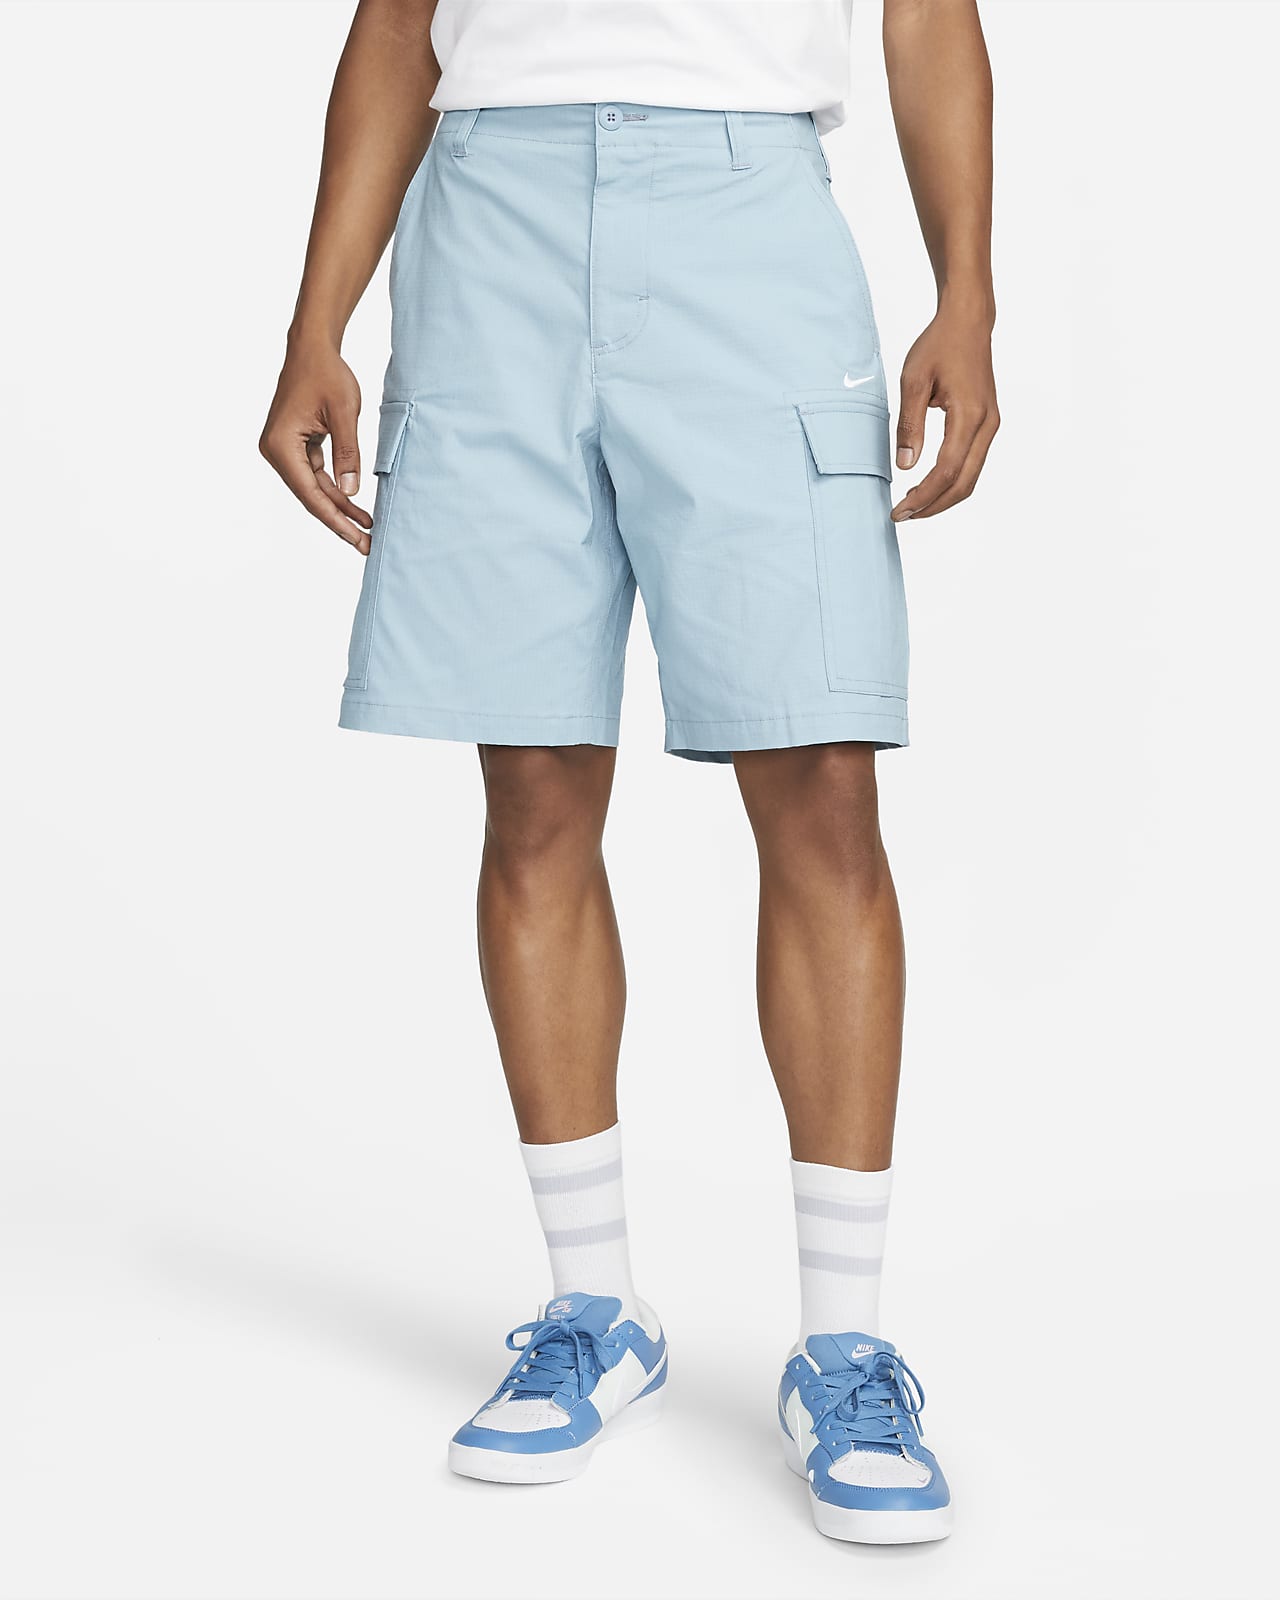 Nike SB oldalzsebes, gördeszkás rövidnadrág